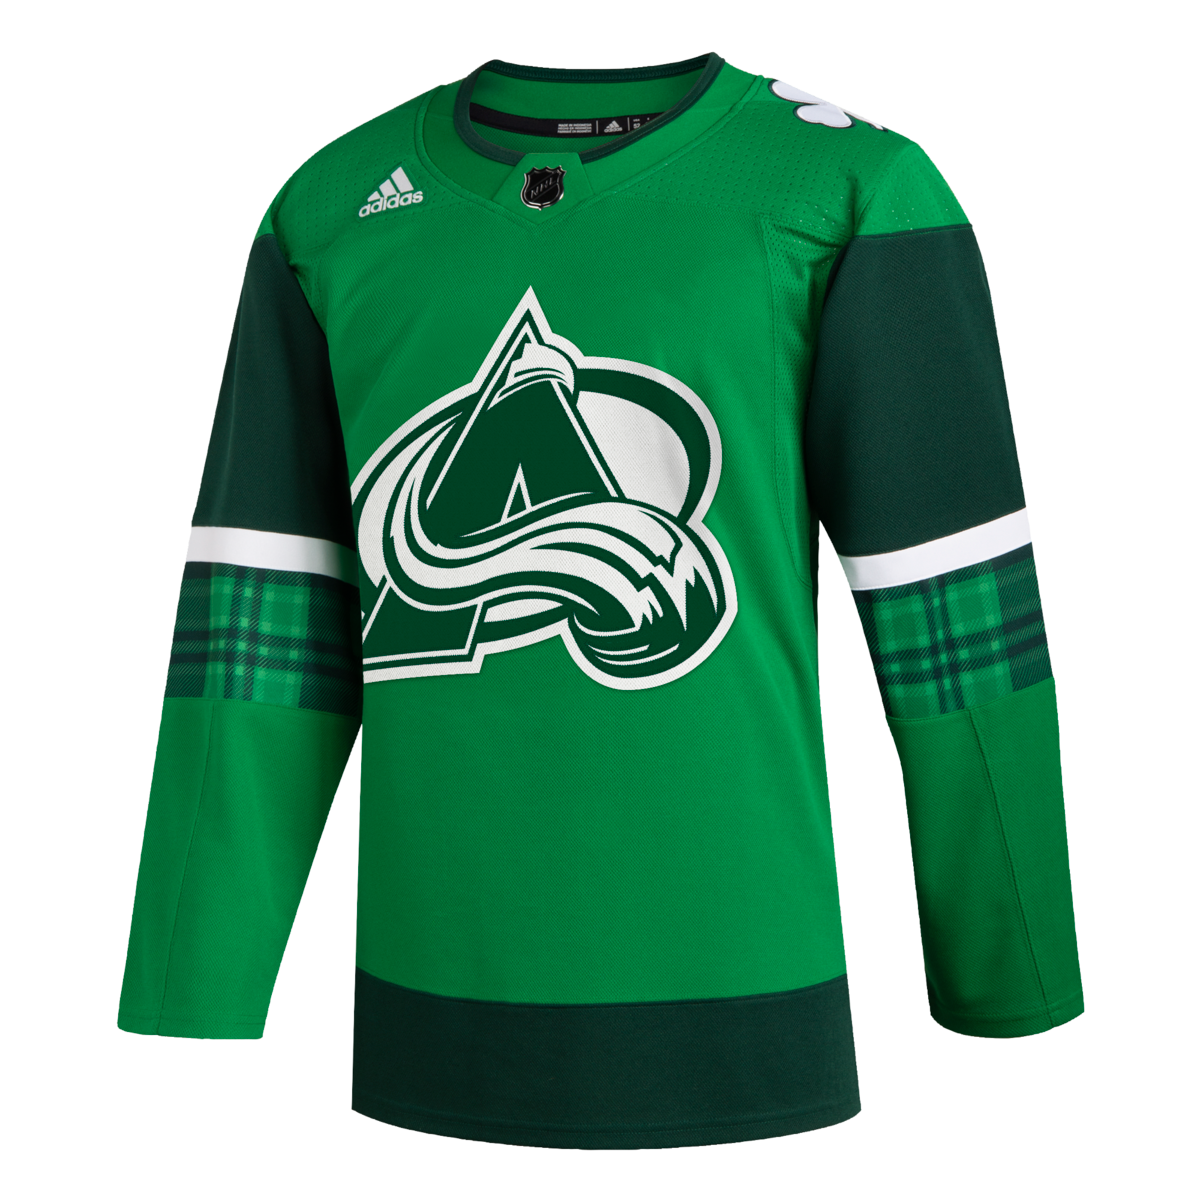 Vintage Anaheim Ducks NHL Hockey Adidas Player Issue Jersey size 46